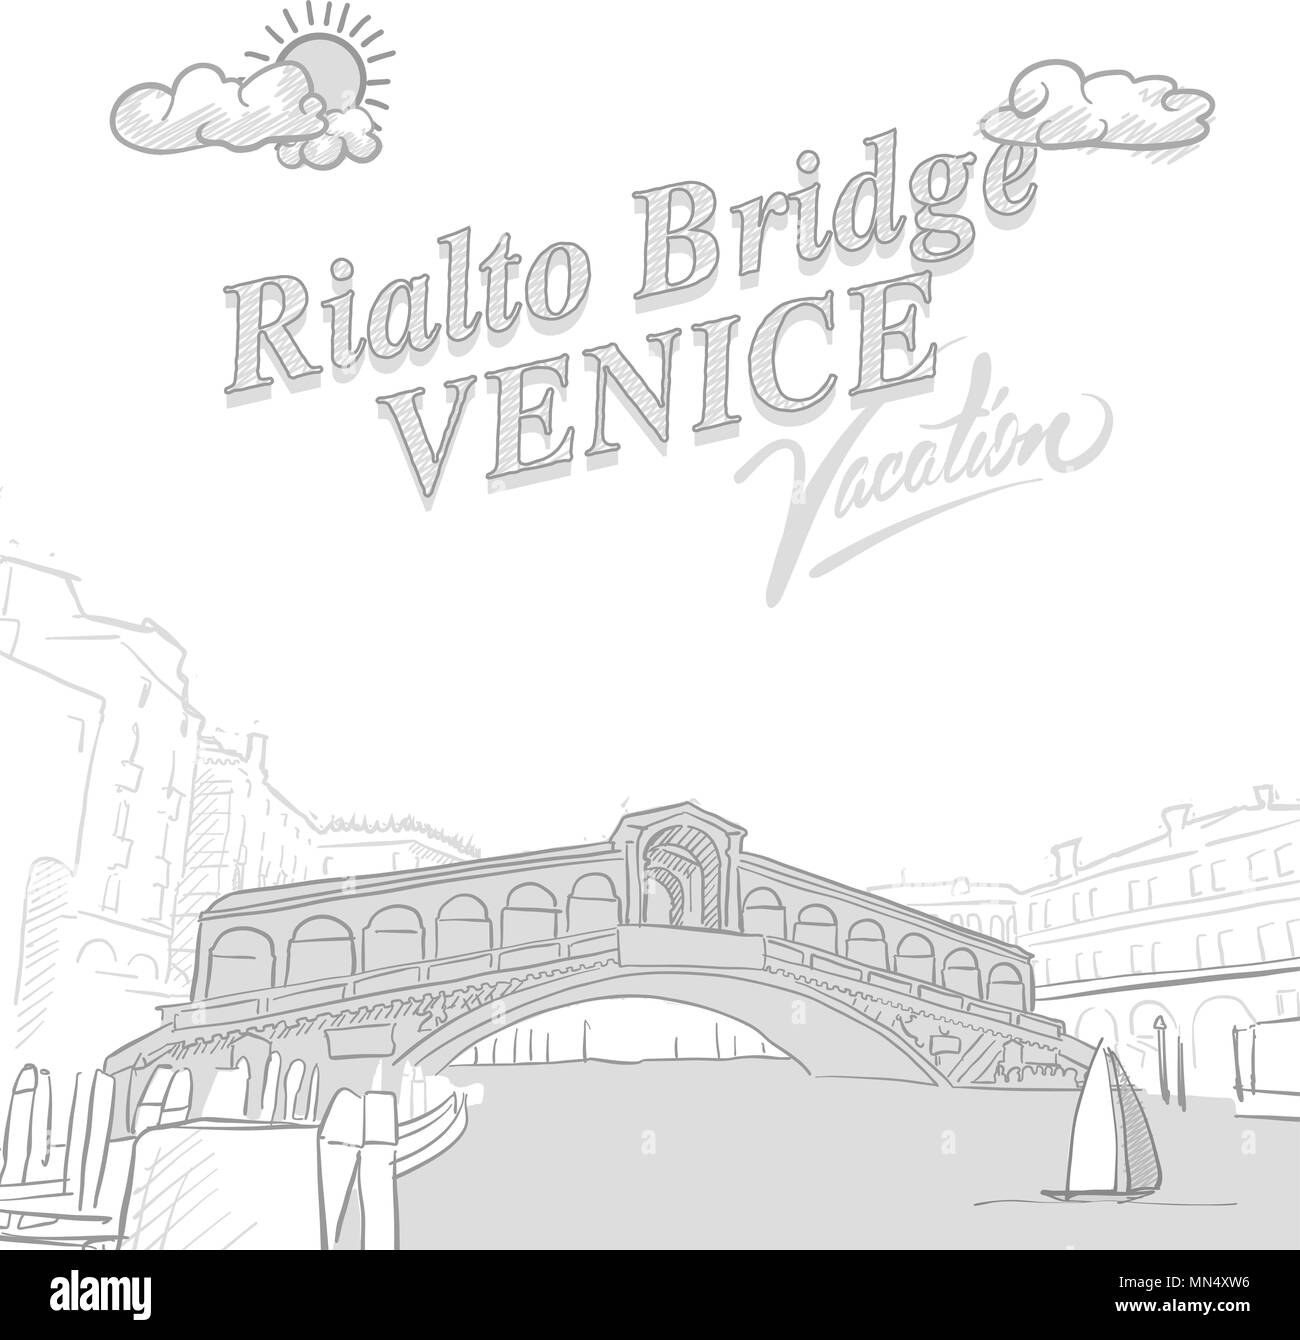 Pont du Rialto travel marketing, ensemble d'une main les dessins vectoriels. Illustration de Vecteur